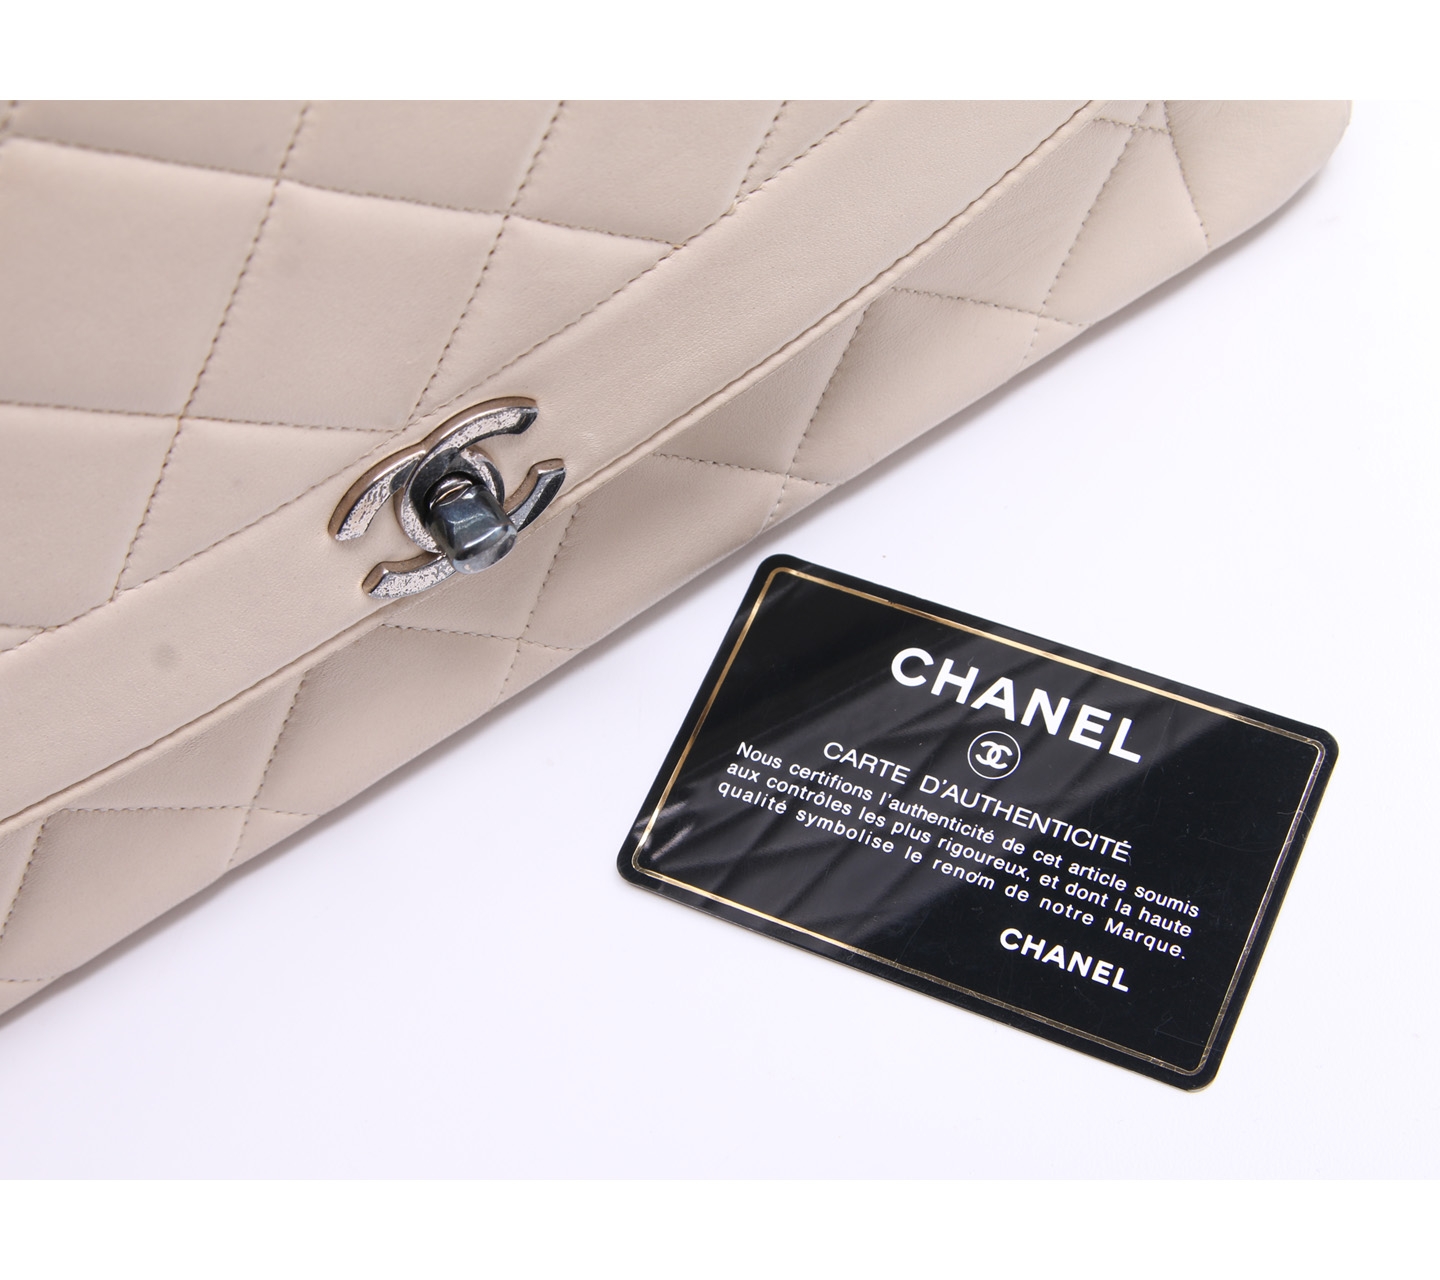 Chanel Cream Diana GHW Shoulder Bag 